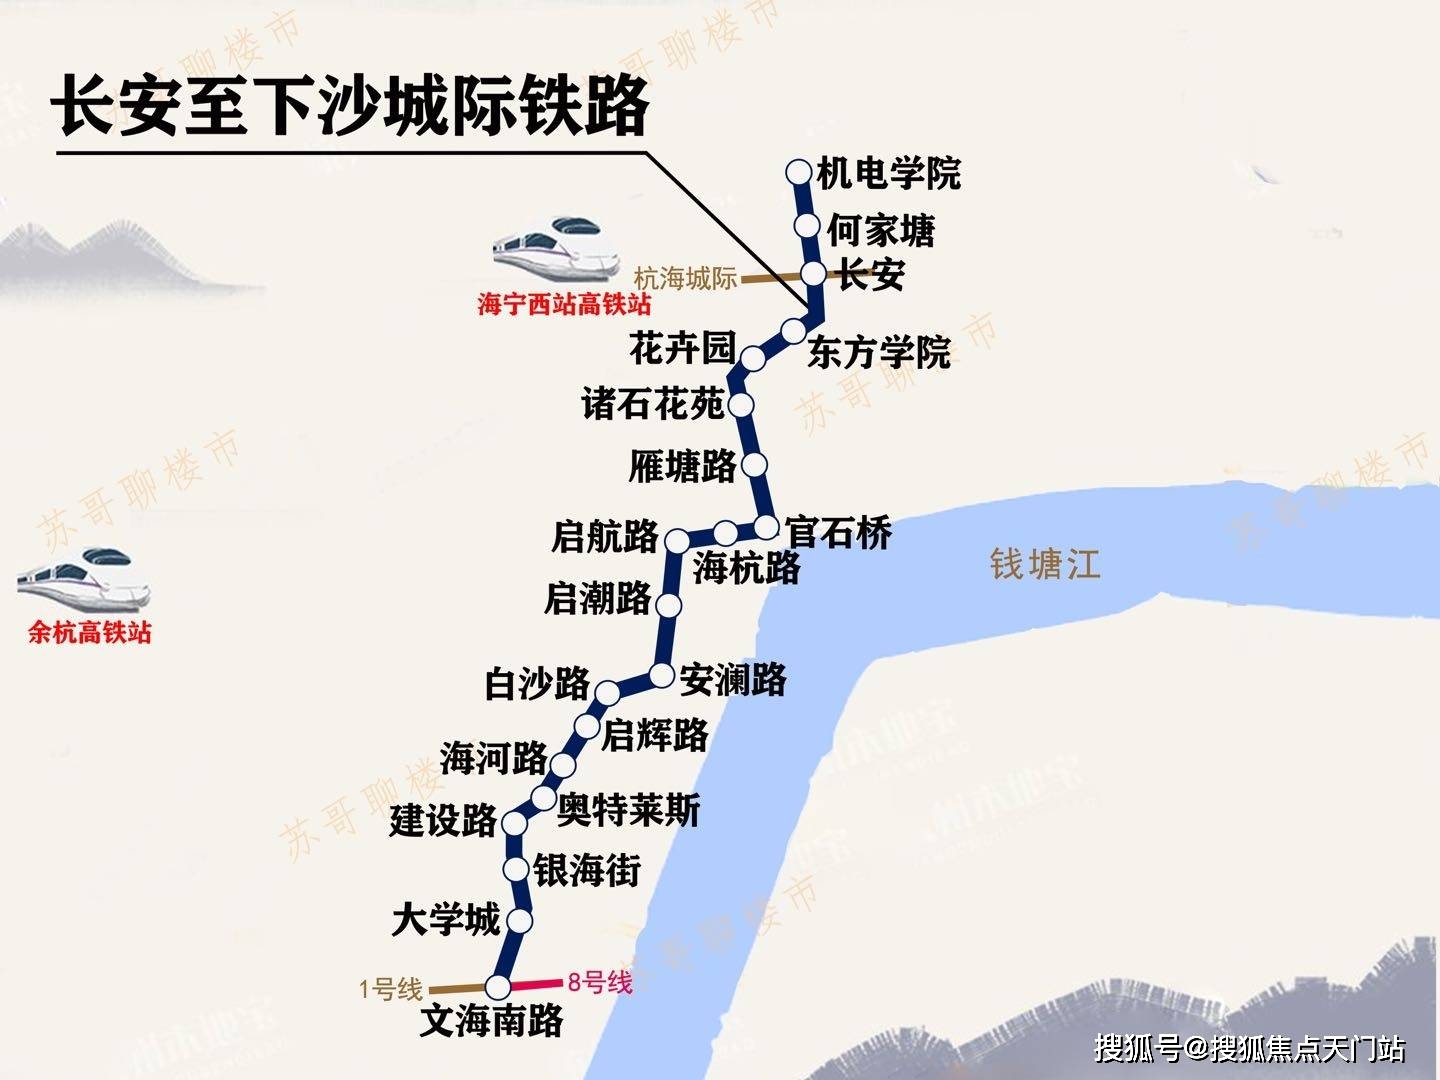 许村是杭海轻轨在海宁界的第一站(距离项目800米)(1)杭海城际轻轨(试